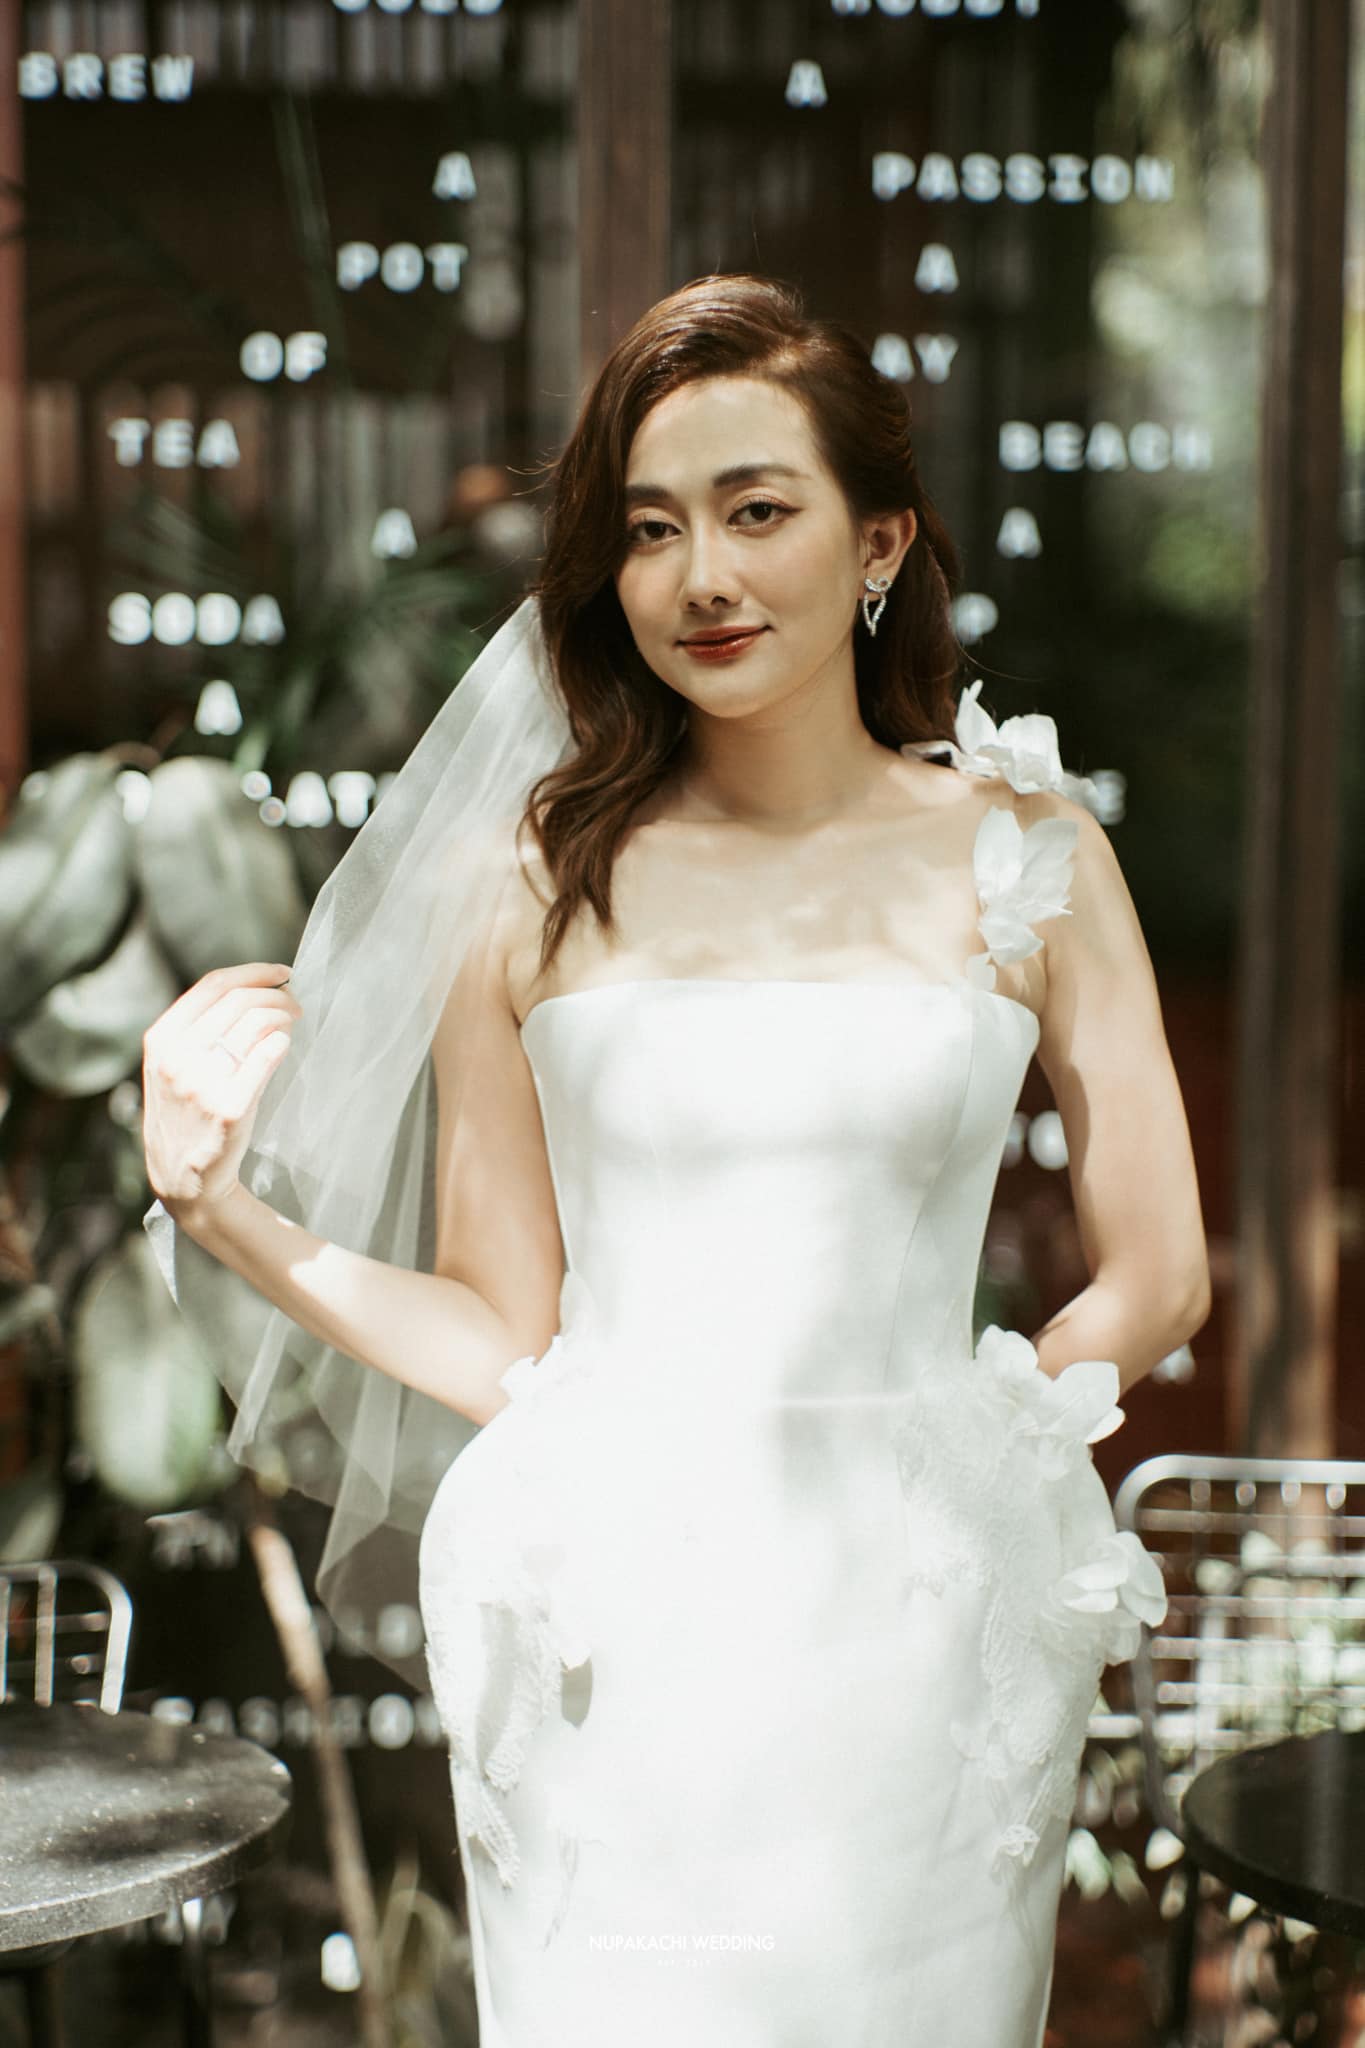 Vừa xong đám cưới Puka, showbiz Việt tiếp tục rộn ràng với hôn lễ của cặp đôi diễn ra ở 3 nơi khác nhau - ảnh 4